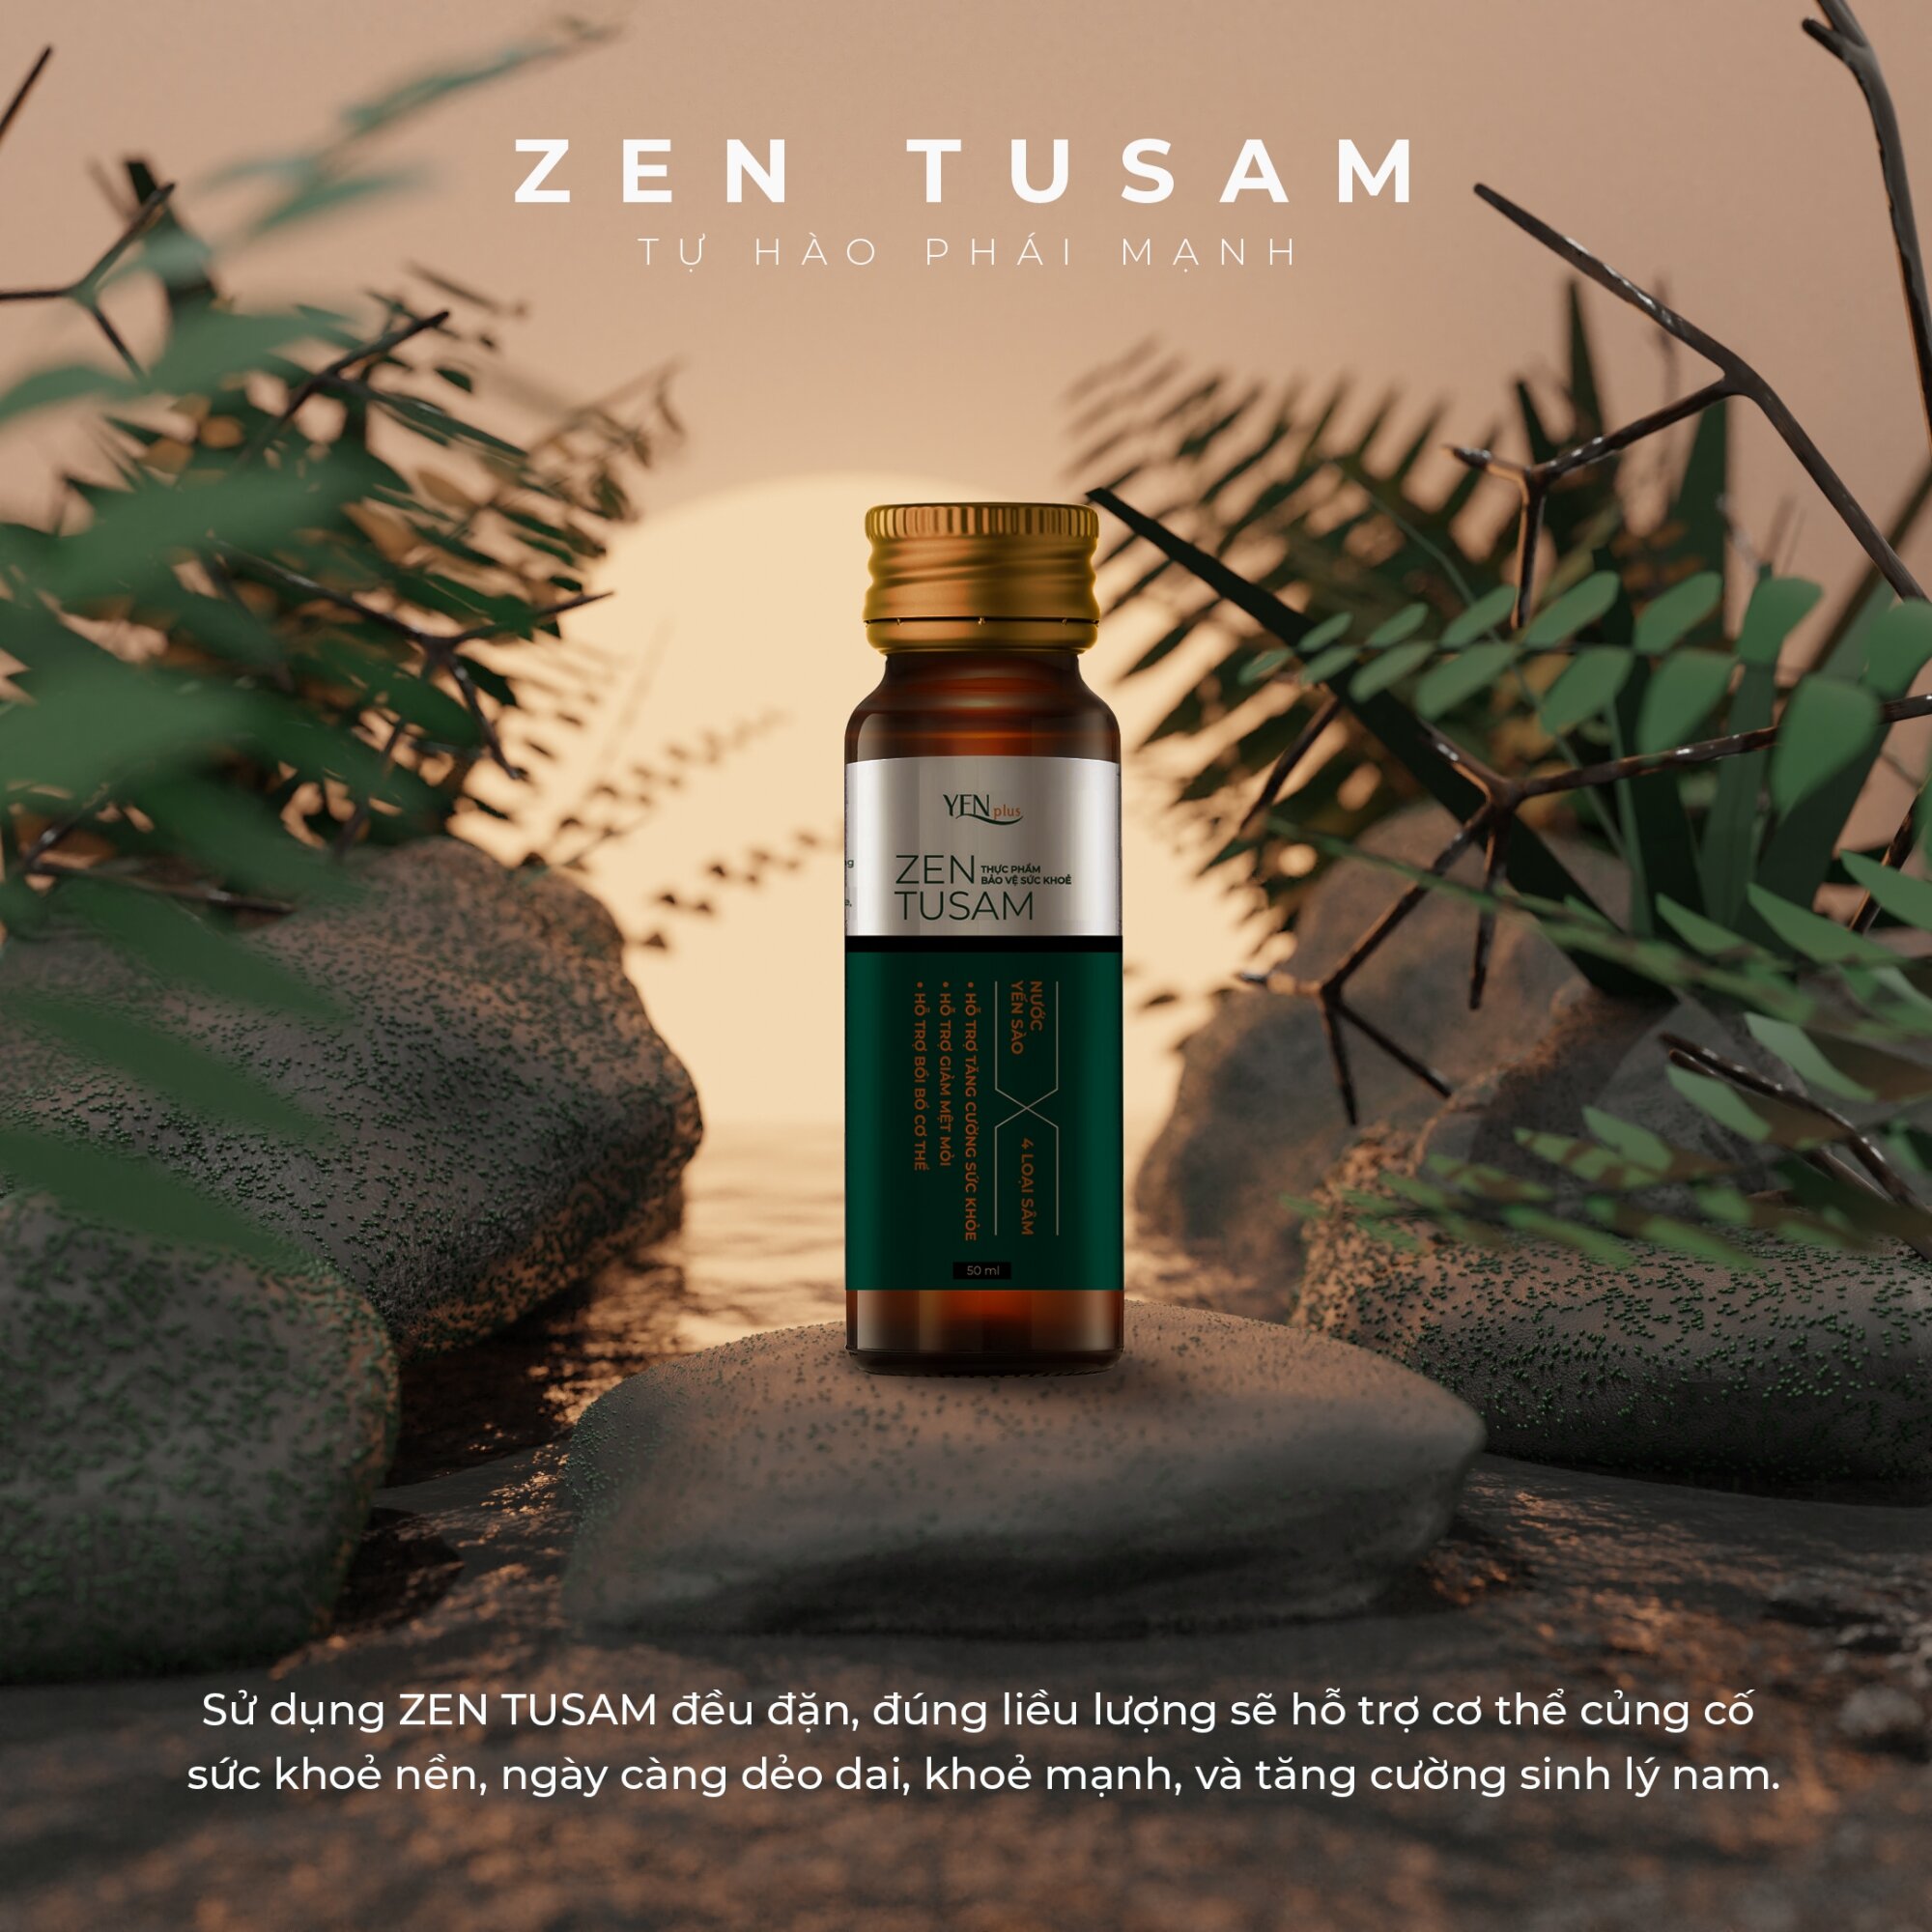 Zen TUSAM - Tự Hào Phái Mạnh - Yen Plus